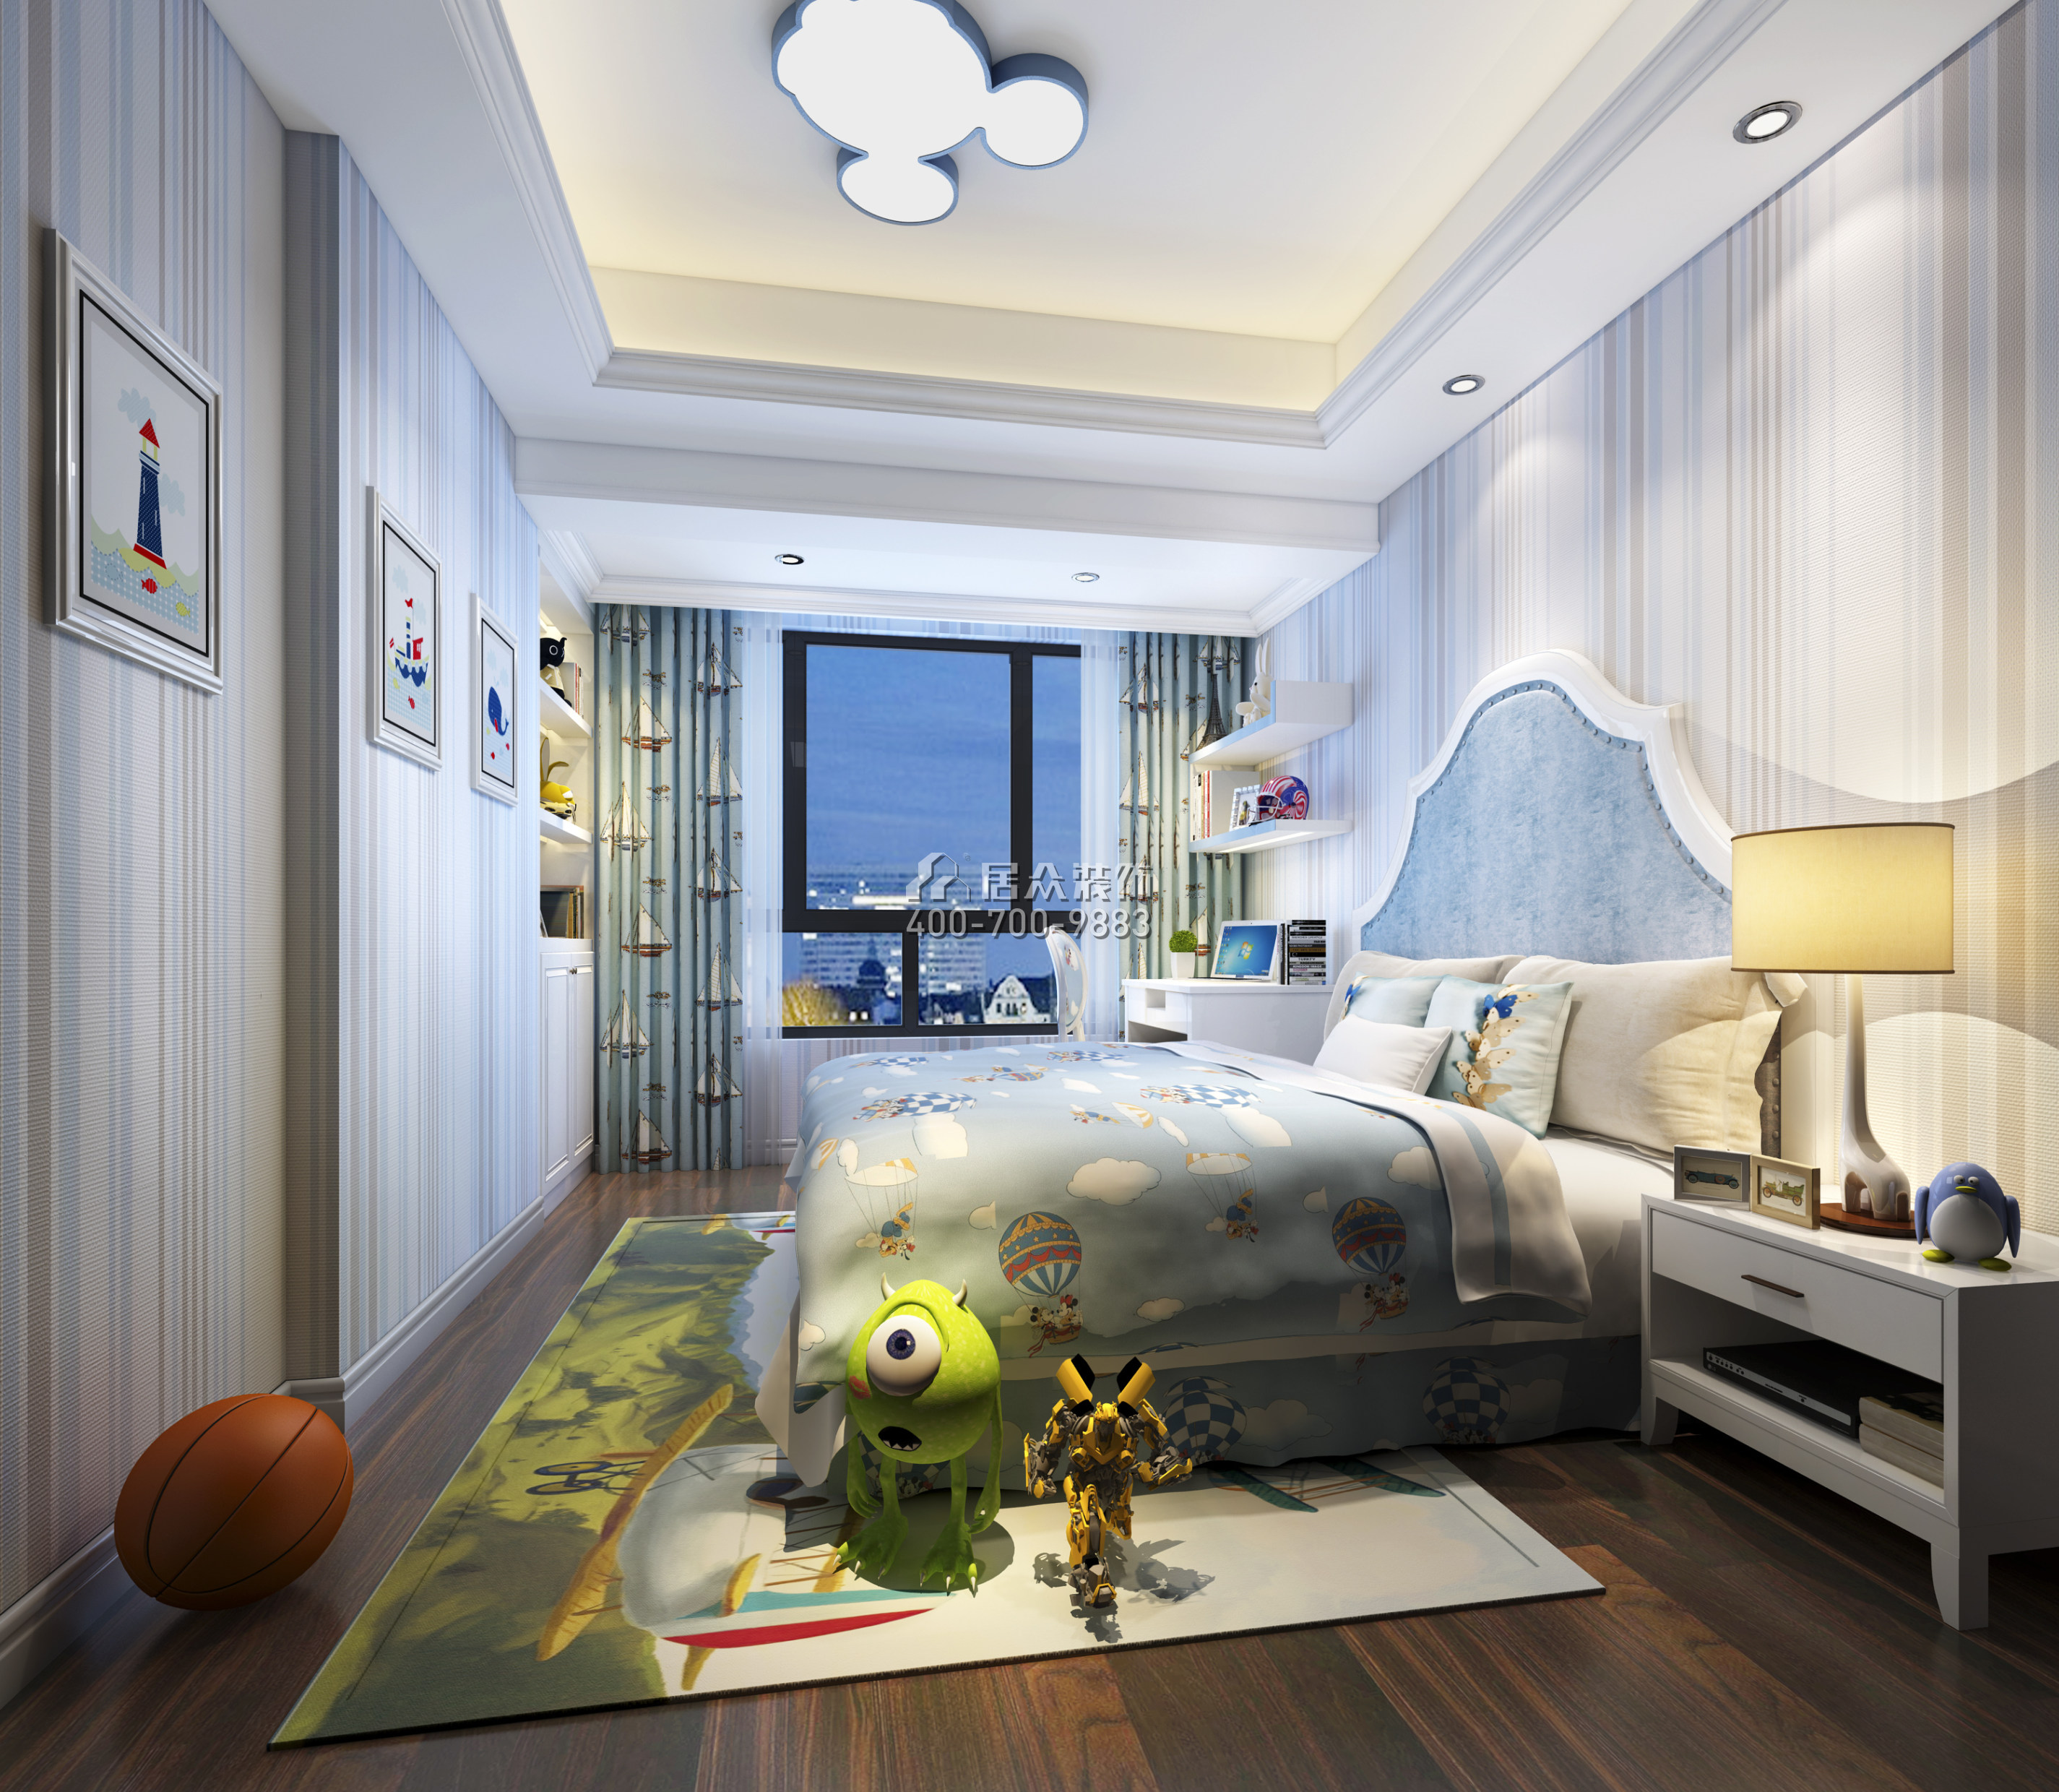 后海理想雅园132平方米欧式风格平层户型卧室装修效果图